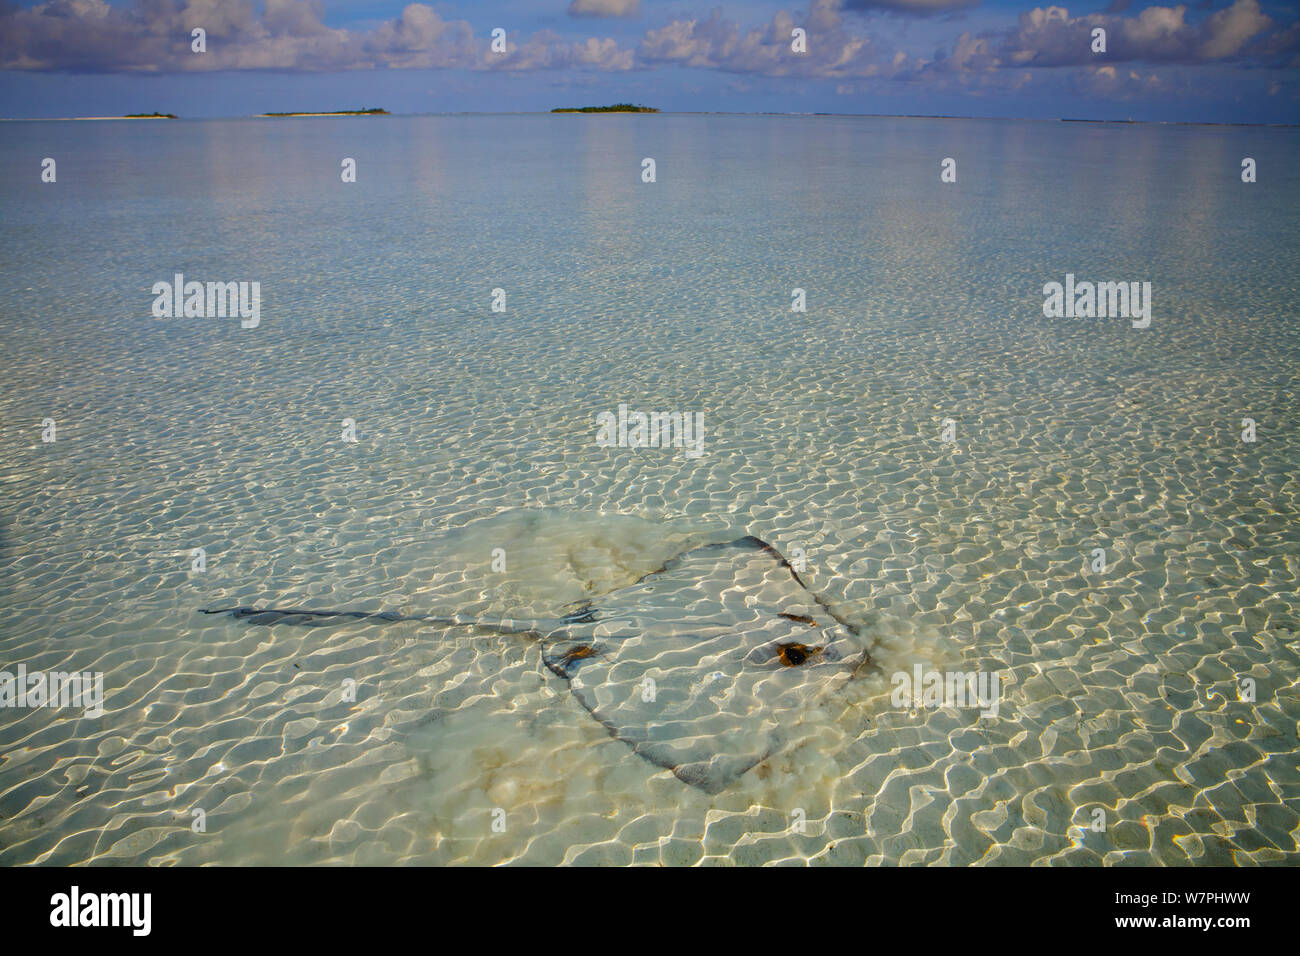 Cowtail Stingray (Pastinachus sephen) feeding in shallows, Maldives Stock Photo